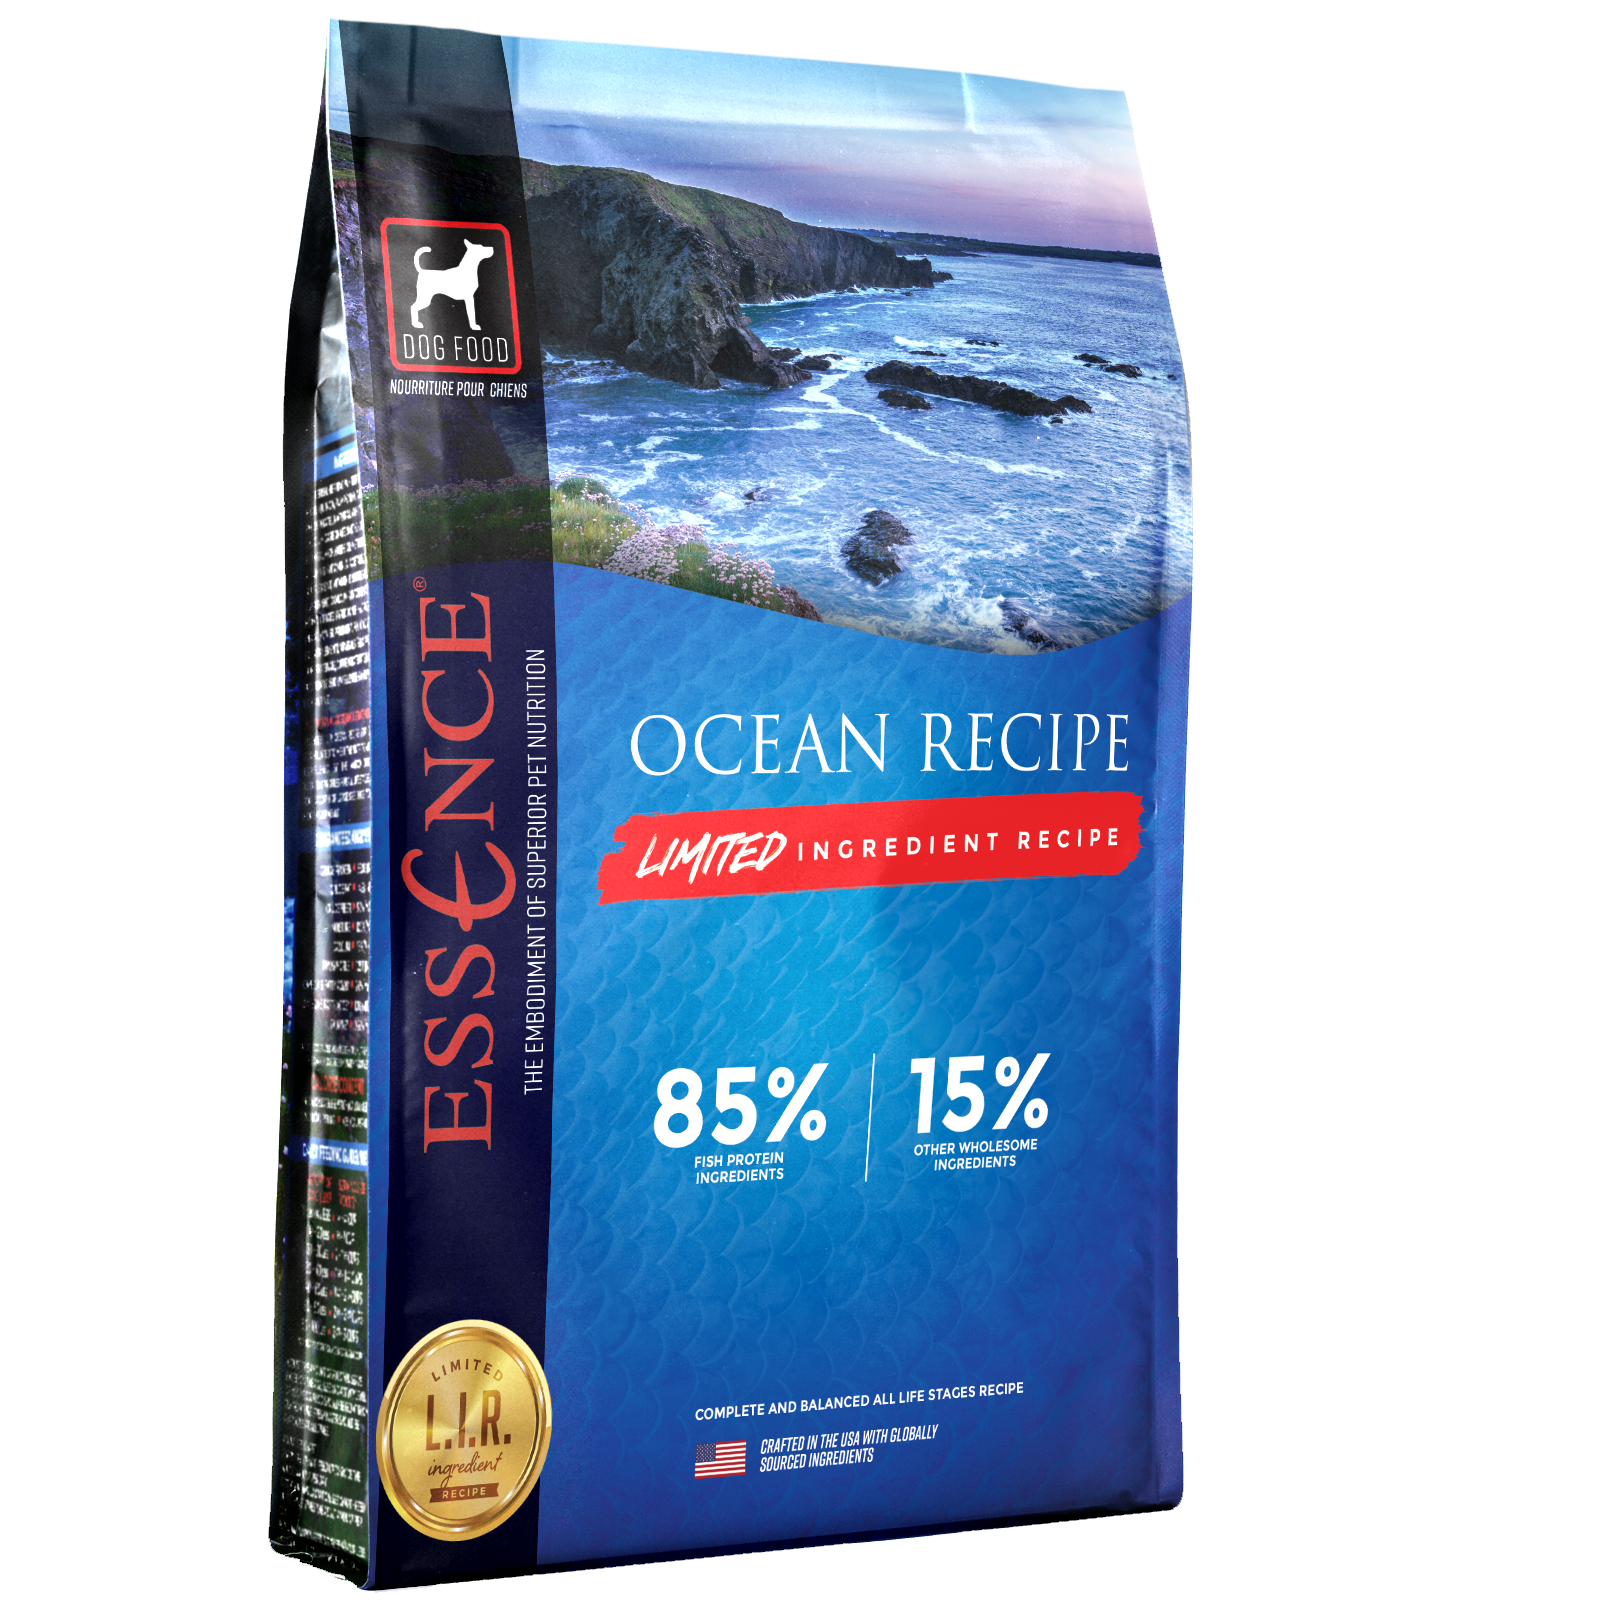 Essence Limited Ingredient Recipe Ocean